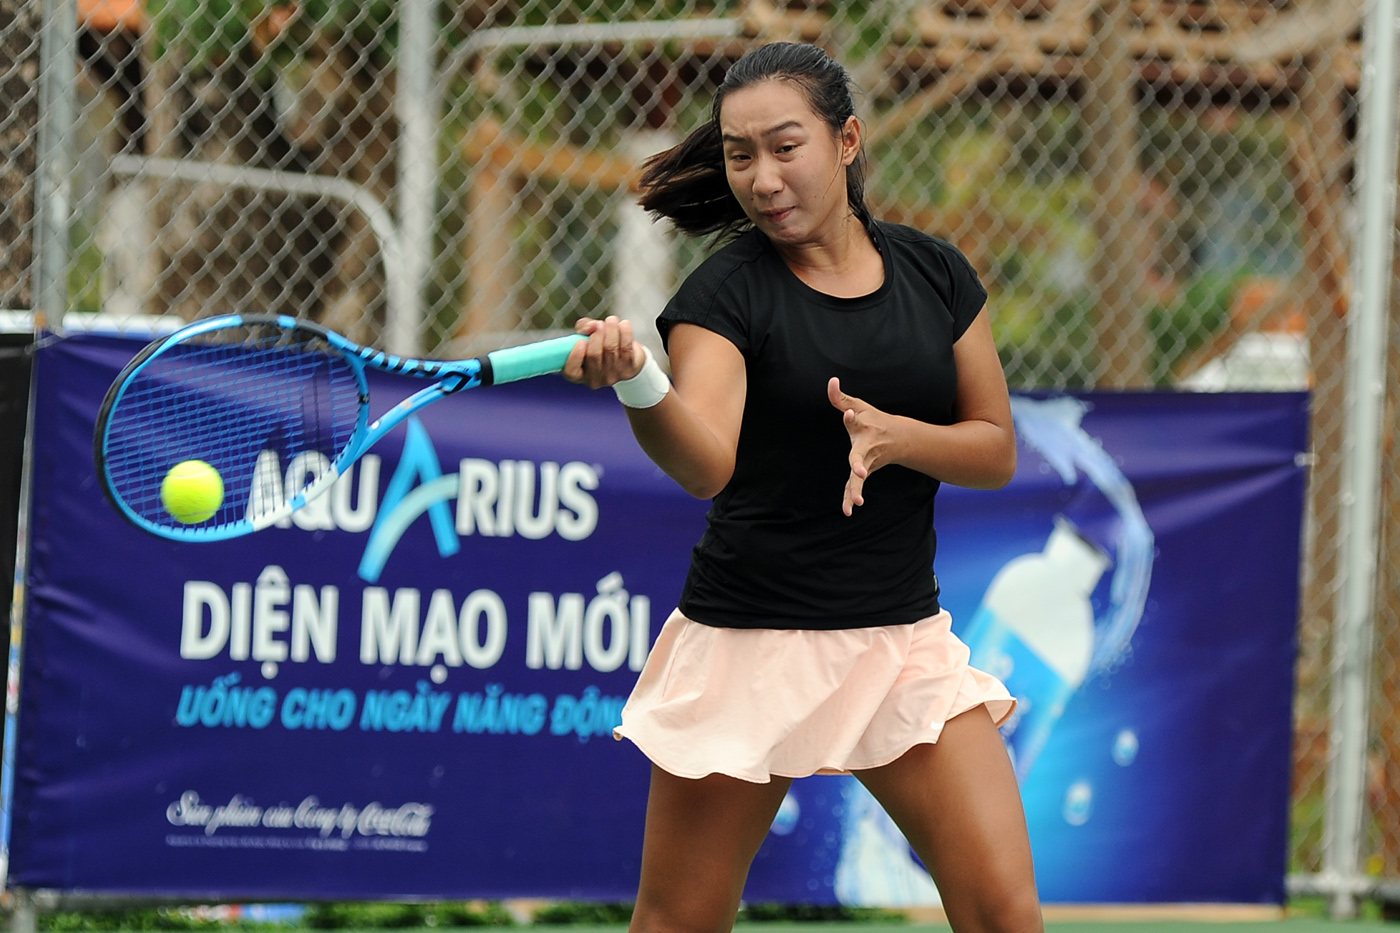 Giải tennis VTF Junior Tour 1-2019 : Hưng Thịnh TP.HCM lại nhất toàn đoàn